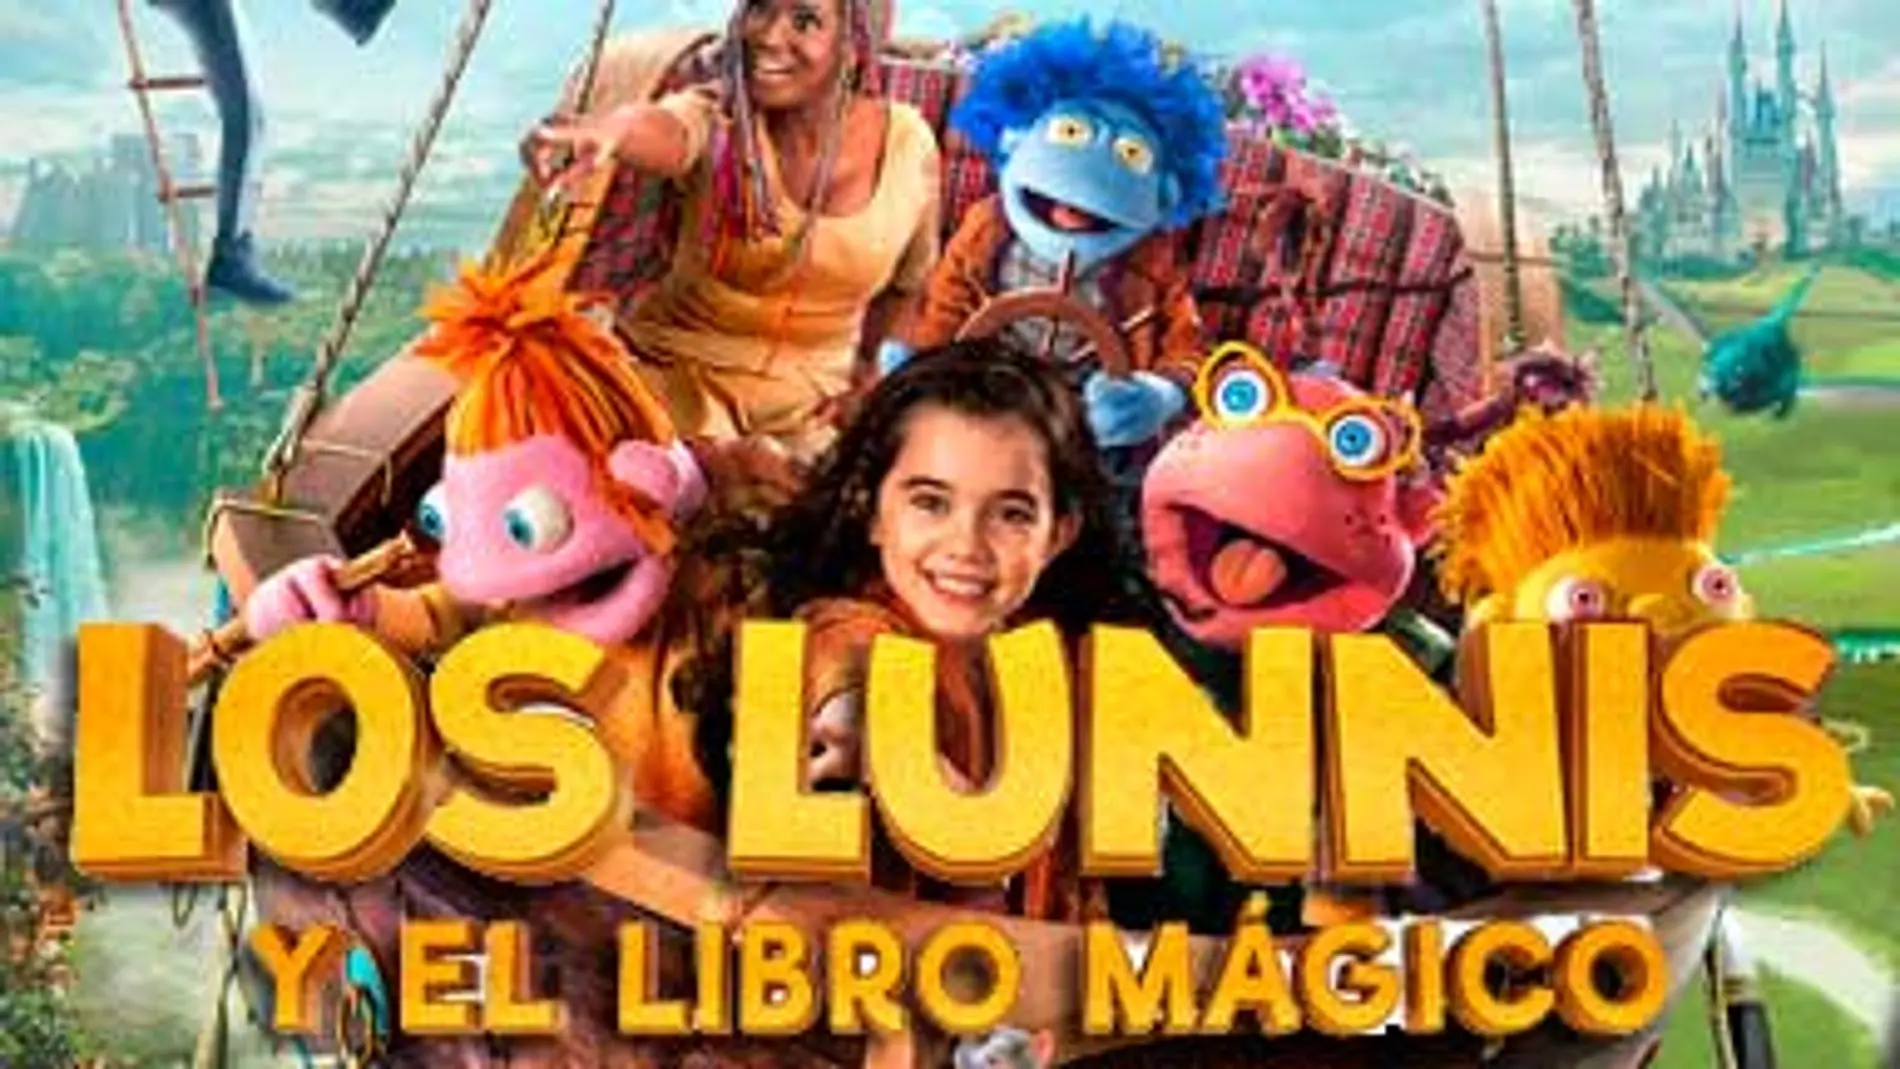 La película de los Lunnis: “La gran aventura de los Lunnis y el Libro Mágico”